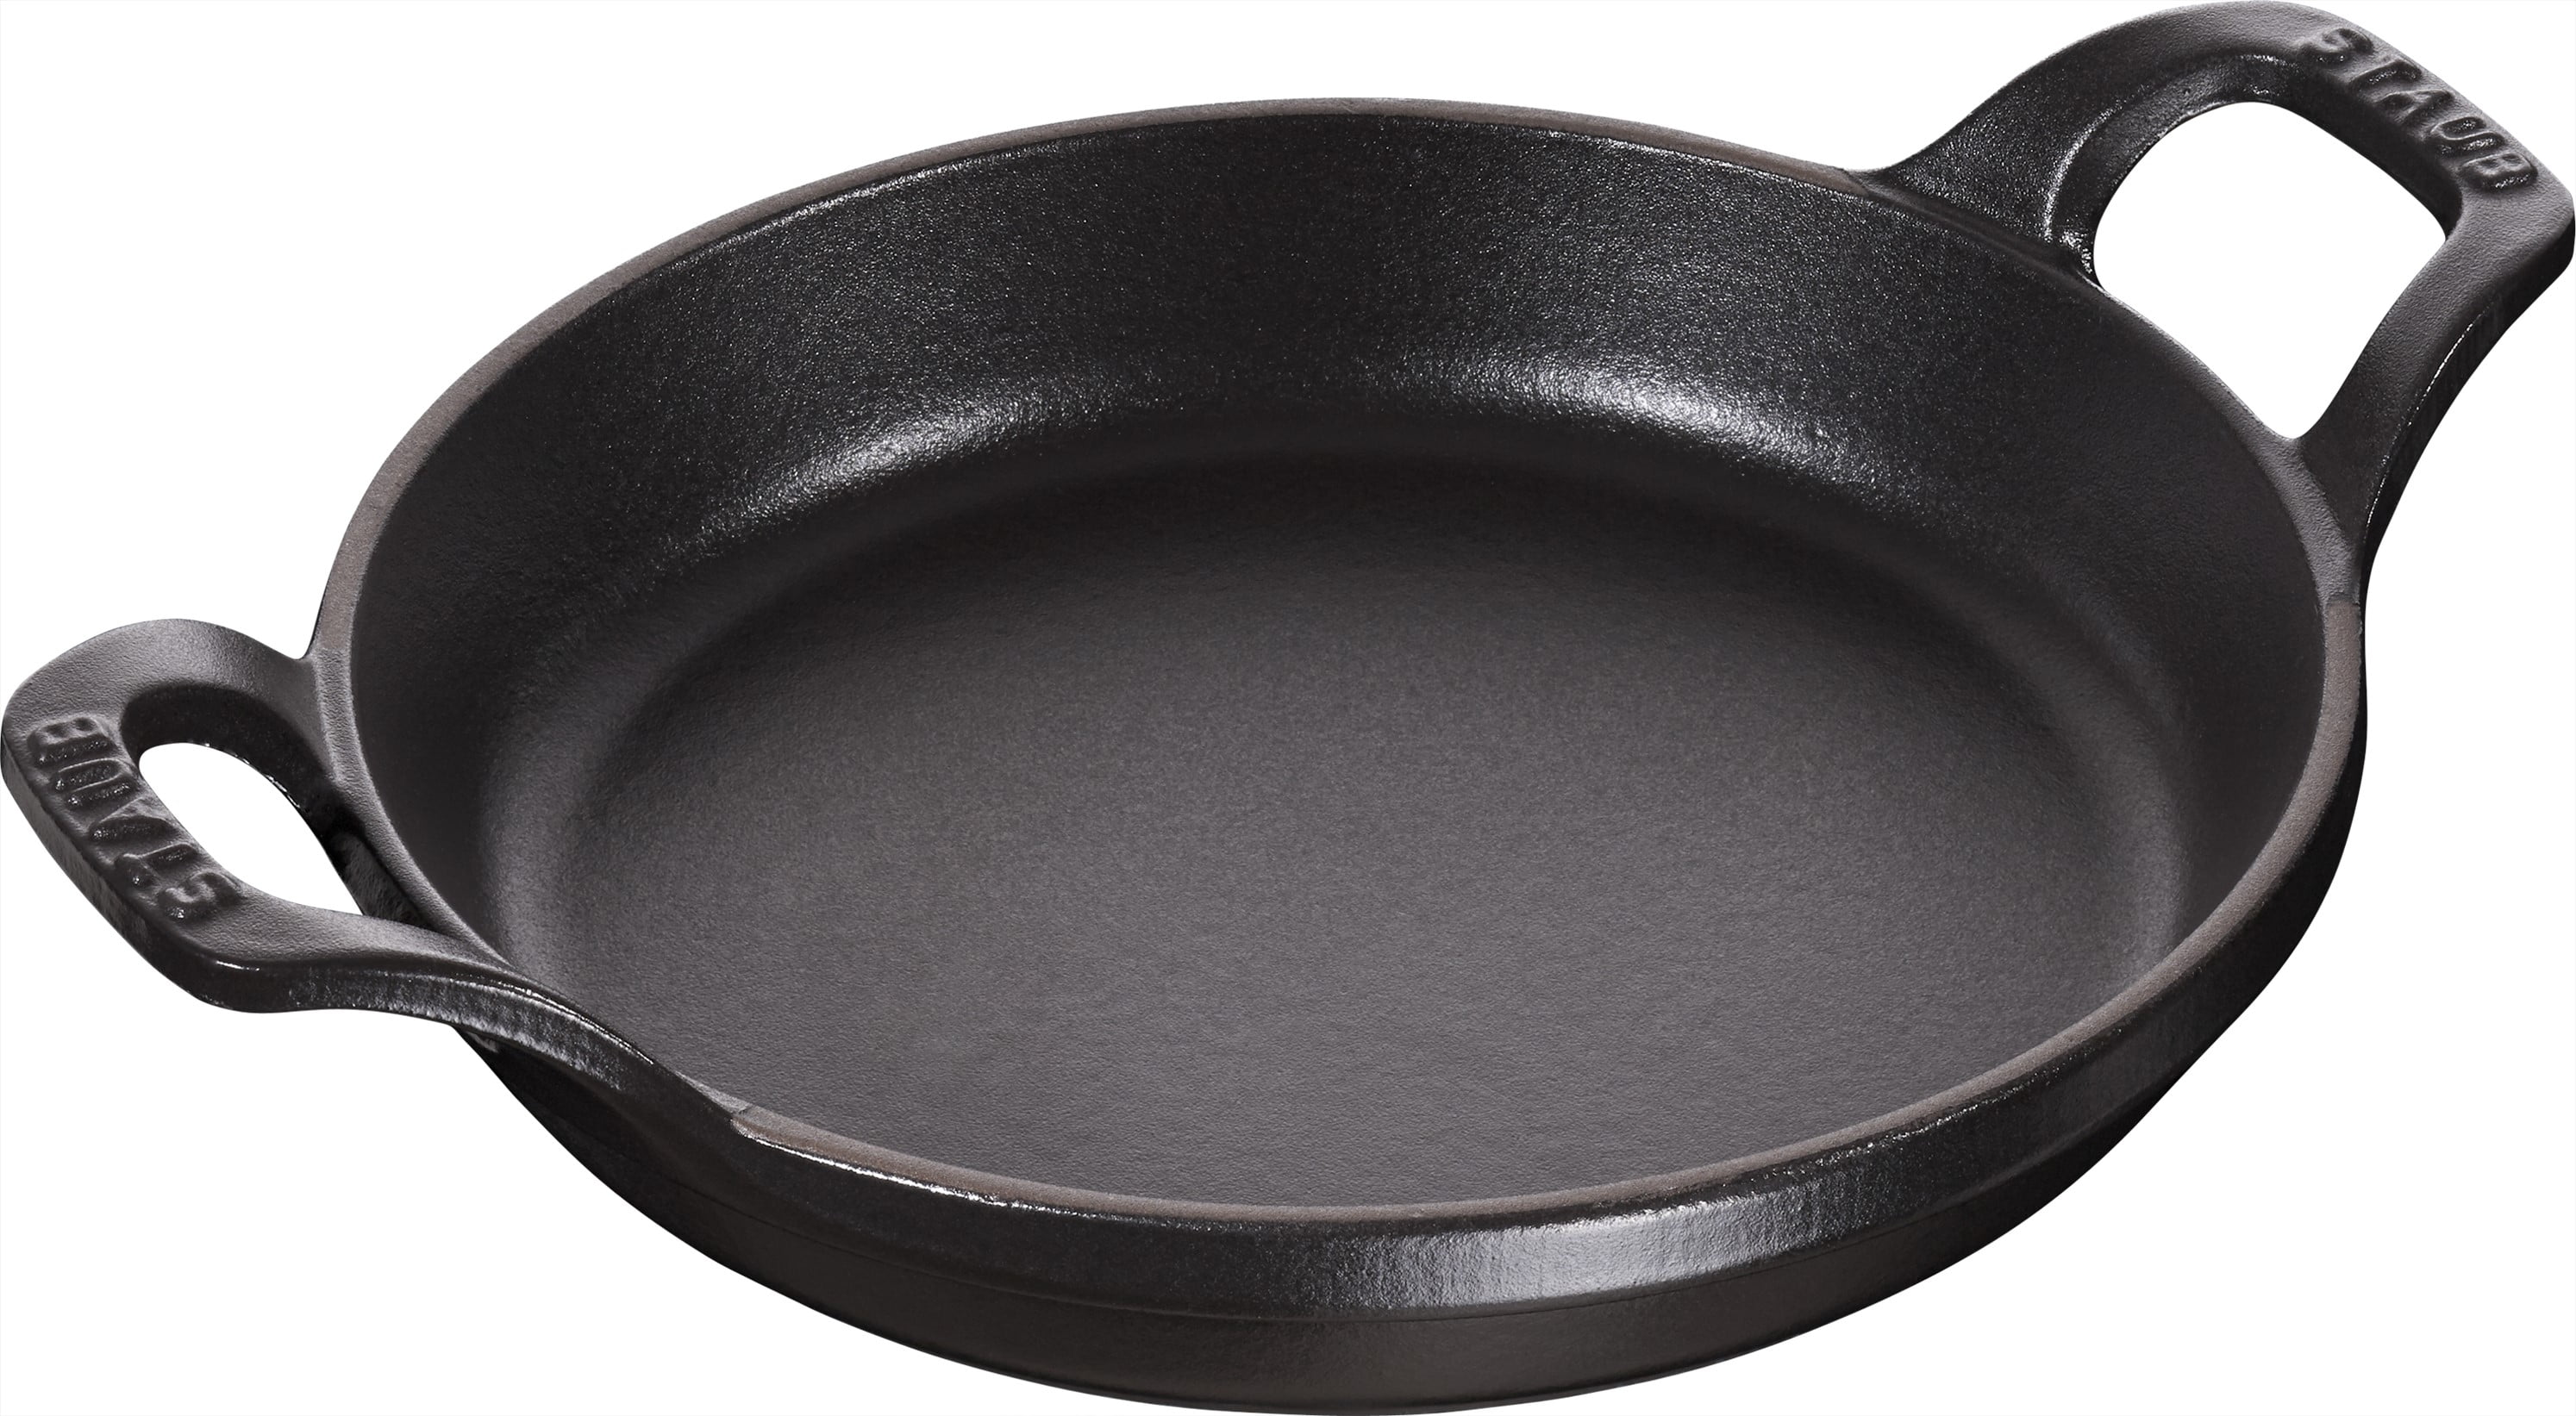 Staub Cast Iron 7.9-inch Round Covered Baking Dish - Matte Black, 7.9-inch  - Kroger